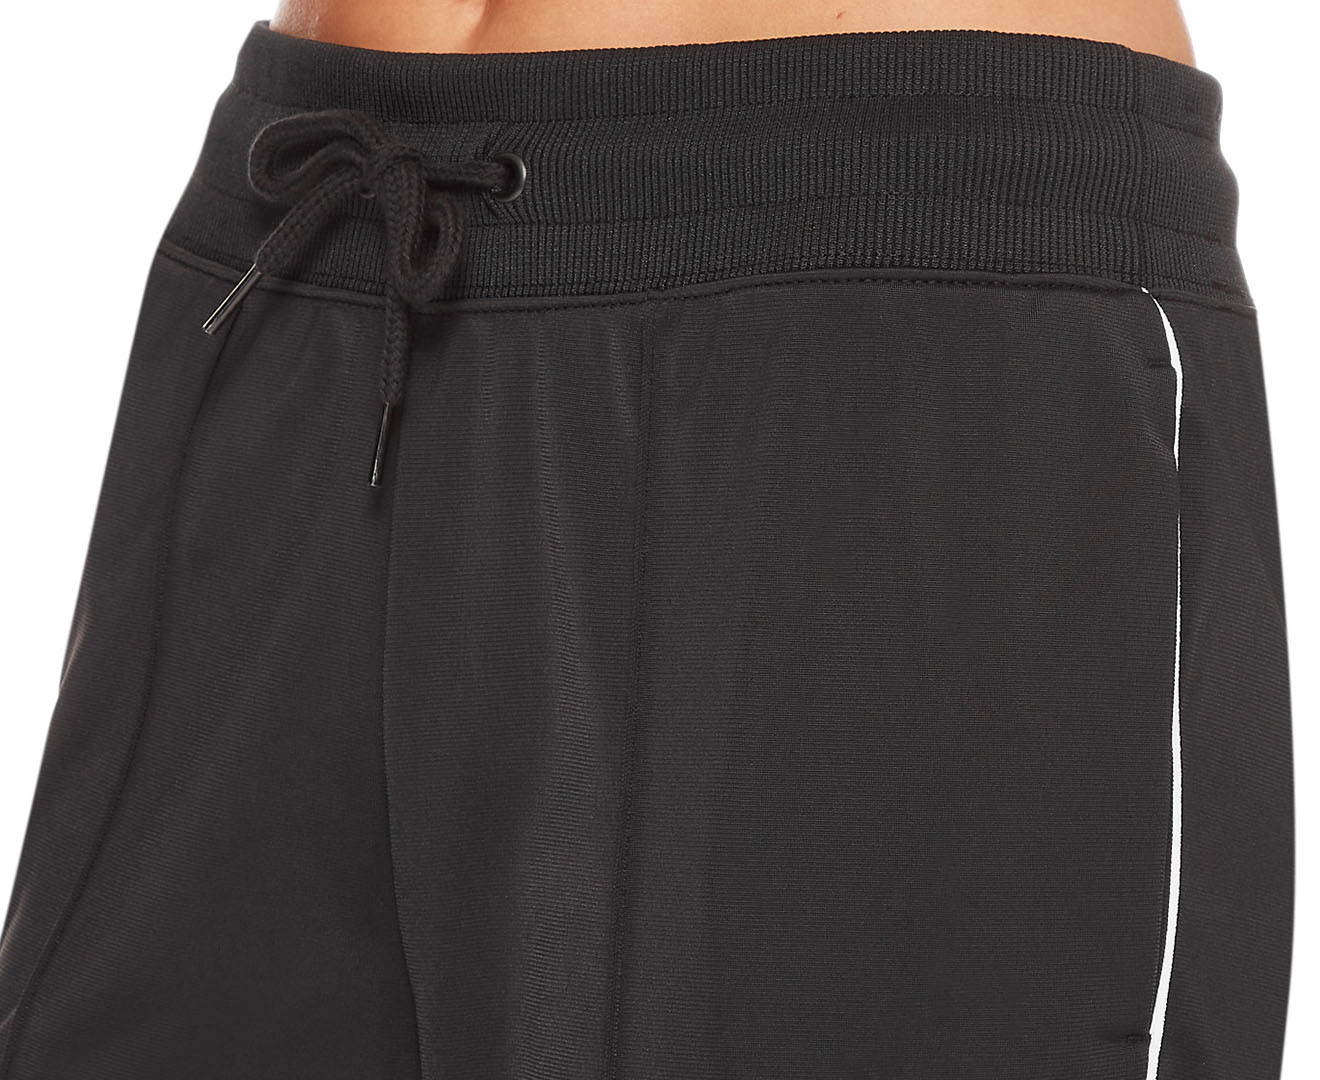 Nike Women's Spportswear Heritage Pants - Black/White | Catch.co.nz